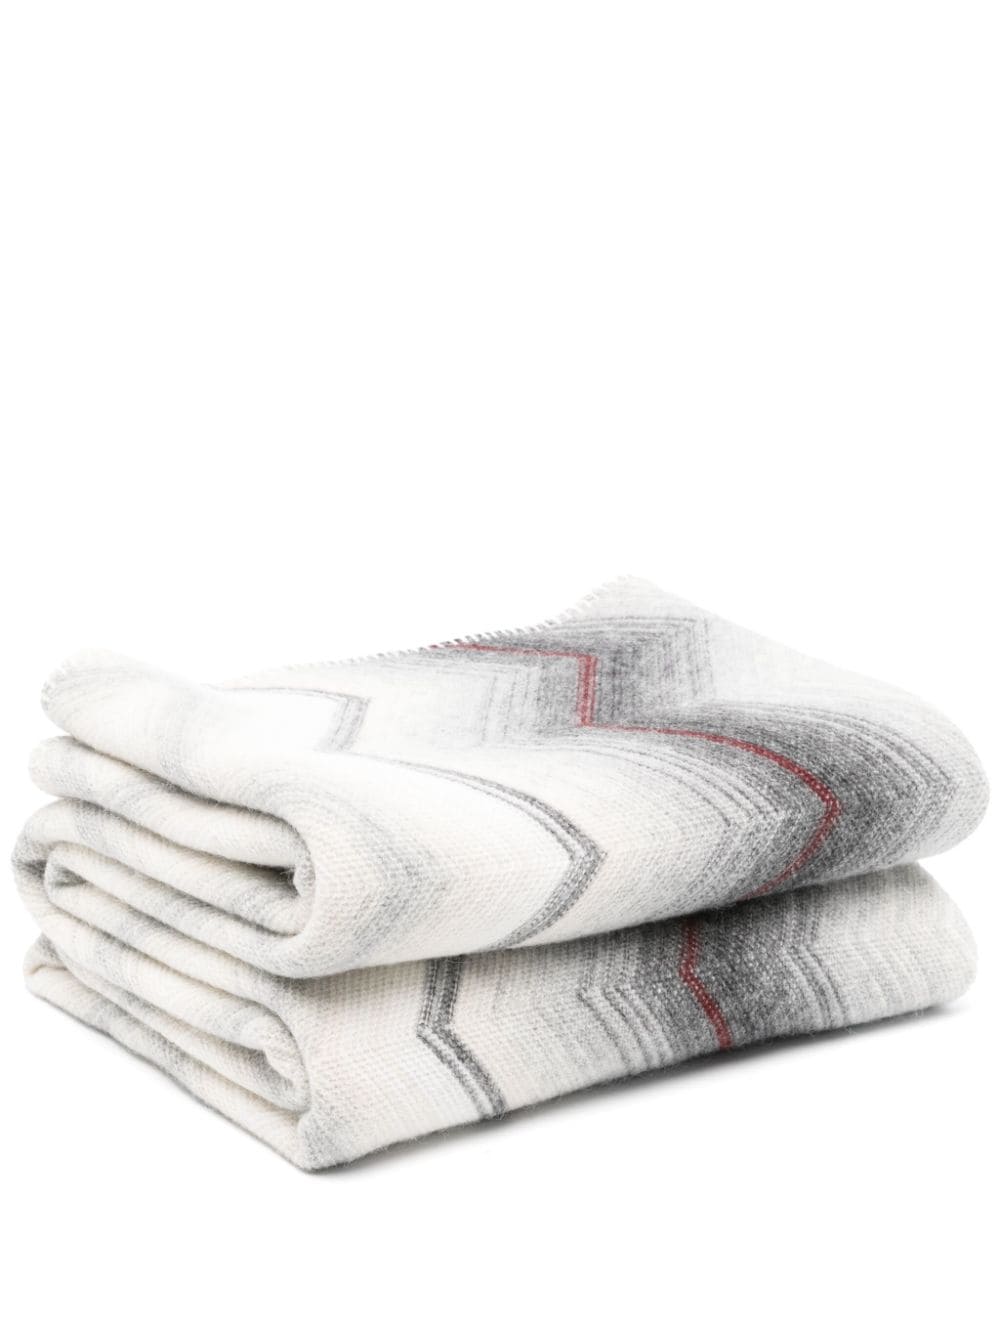 Missoni Zig-zag-print Soft Blanket (190cmx130cm) In White